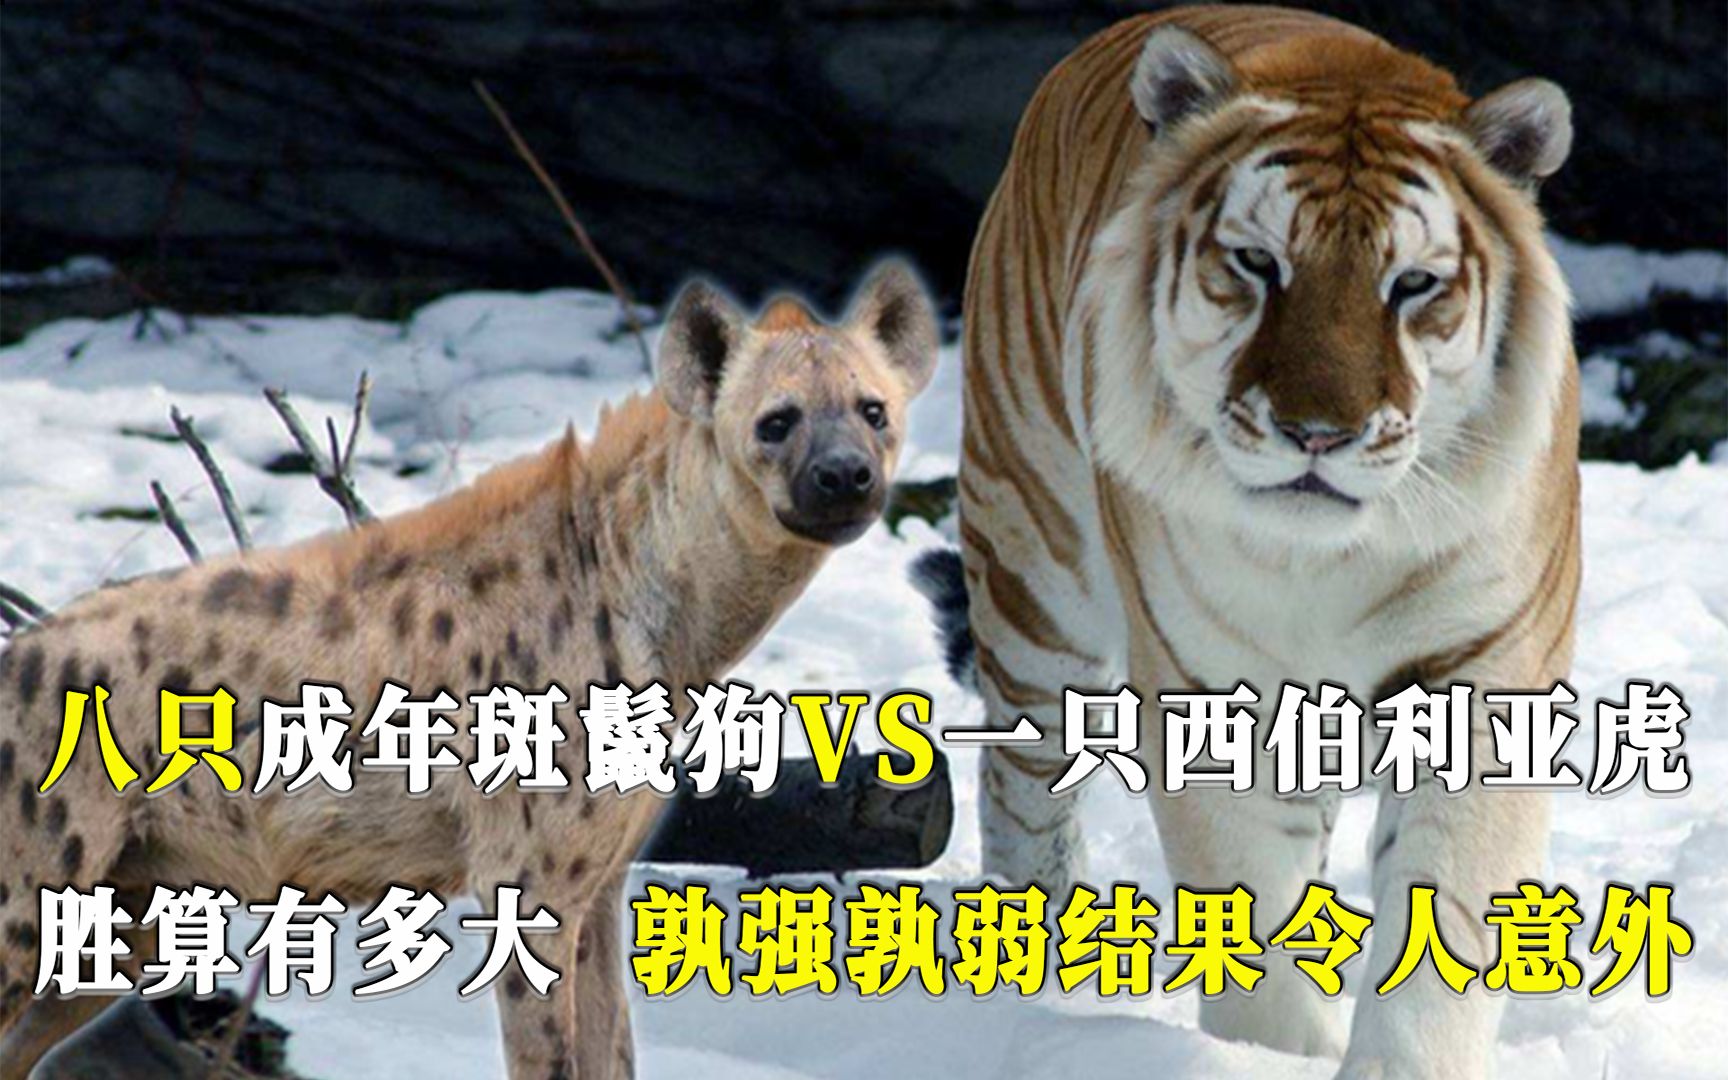 八只成年斑鬣狗，挑战一只西伯利亚虎，胜算有多大？结果令人意外